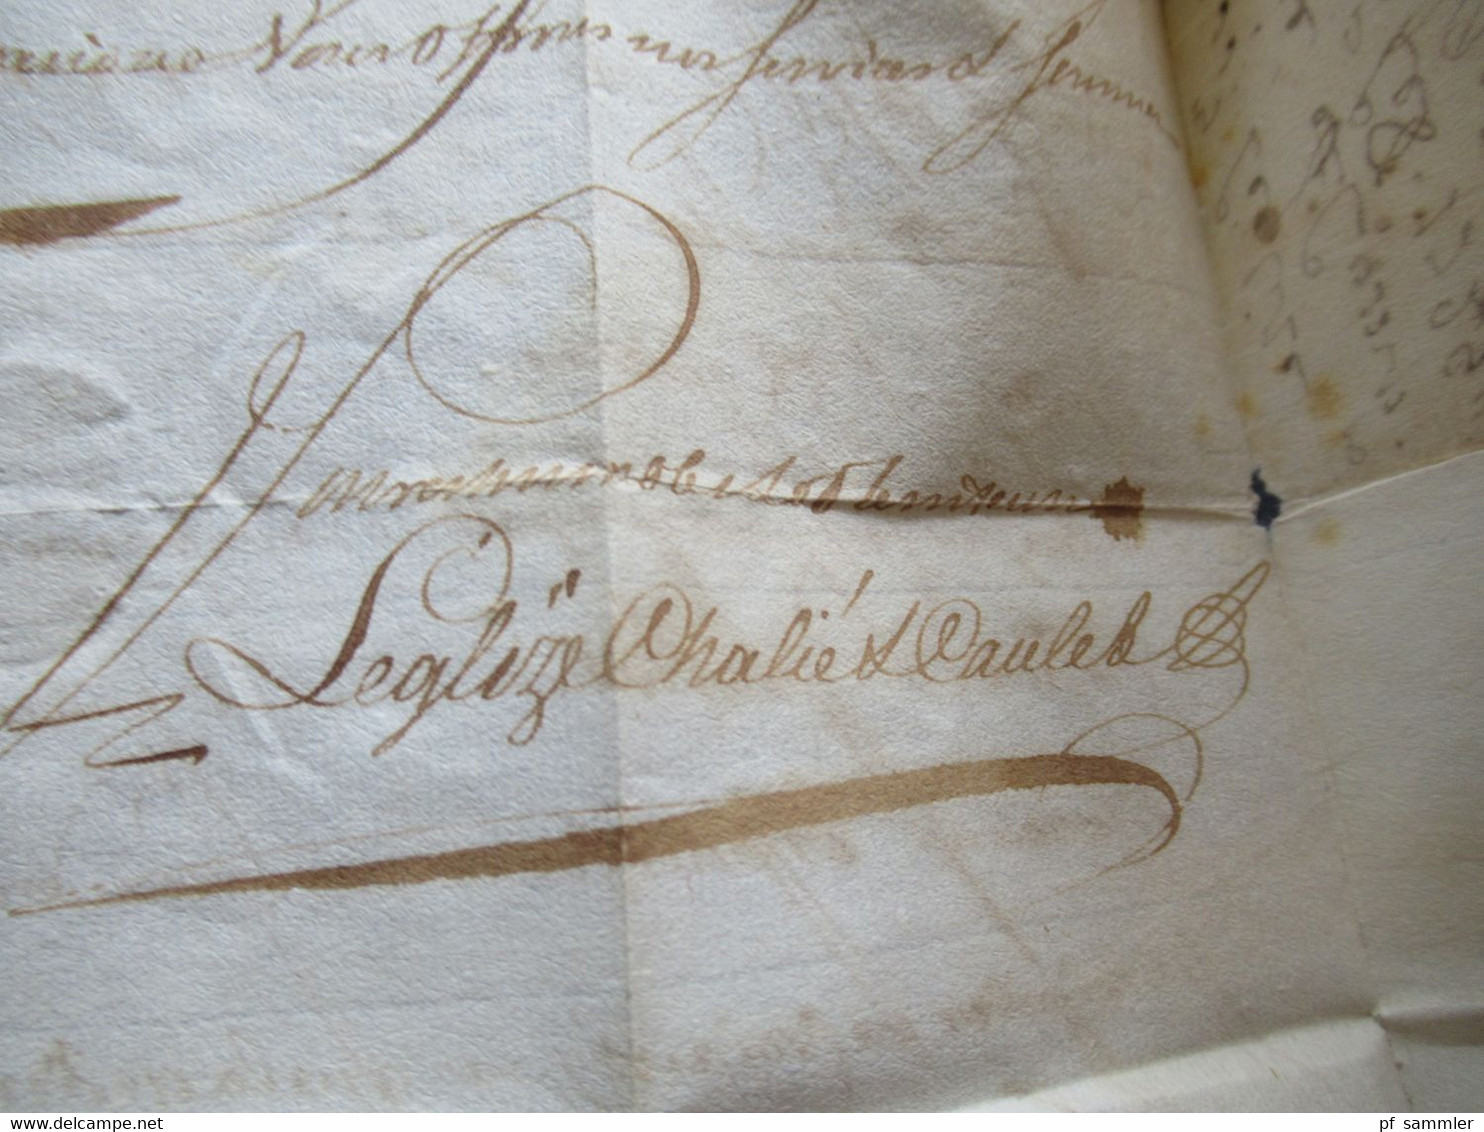 Frankreich 1729 Paris Faltbrief mit Inhalt und Schnörkel Unterschrift / Autograph schwarzer Stempel L1